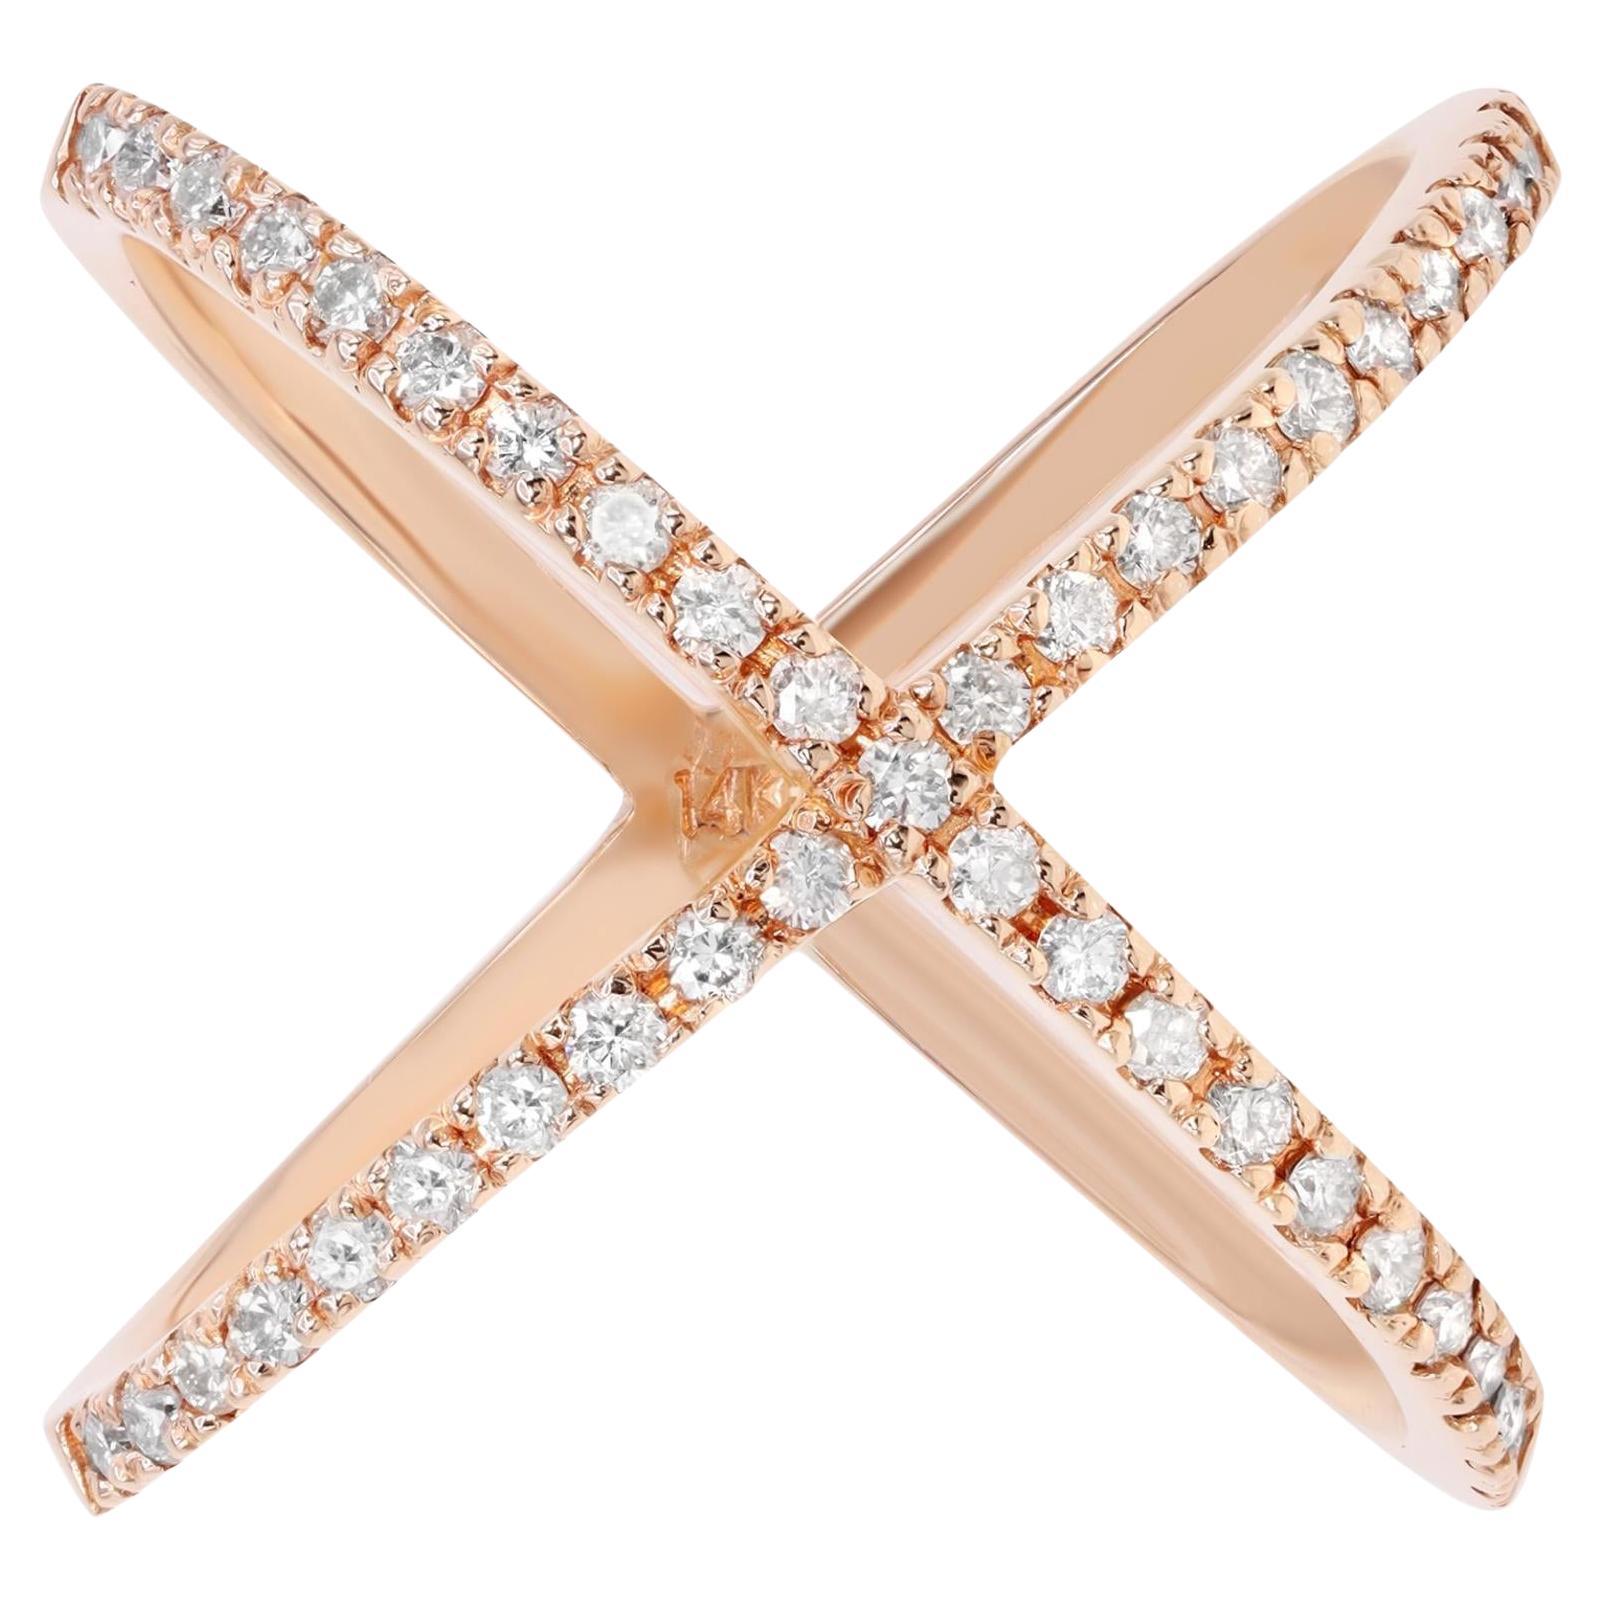 Rachel Koen Natural Diamond X Ring 14K Rose Gold 0.56cttw For Sale